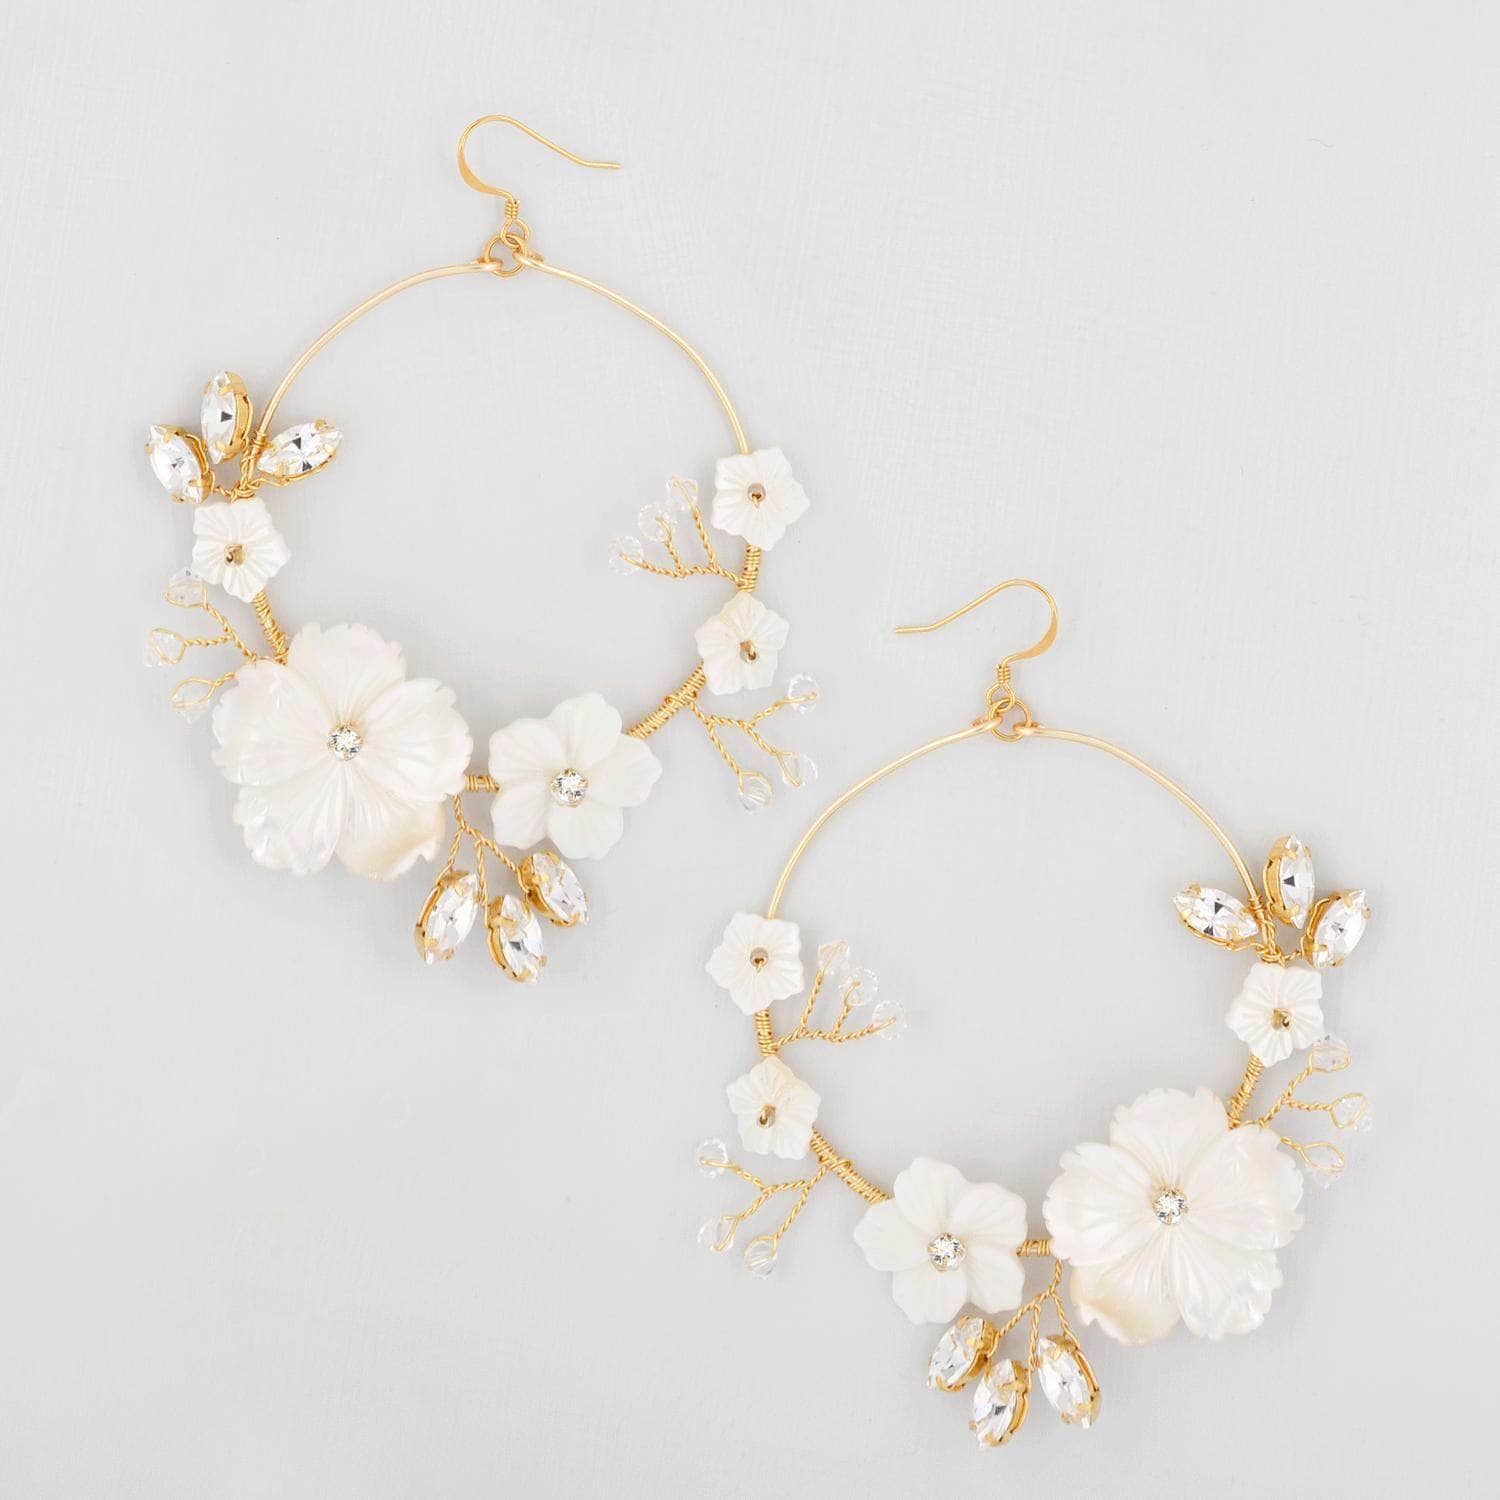 Wedding Earring Statement gold floral hoop wedding earrings - 'Ariadne'